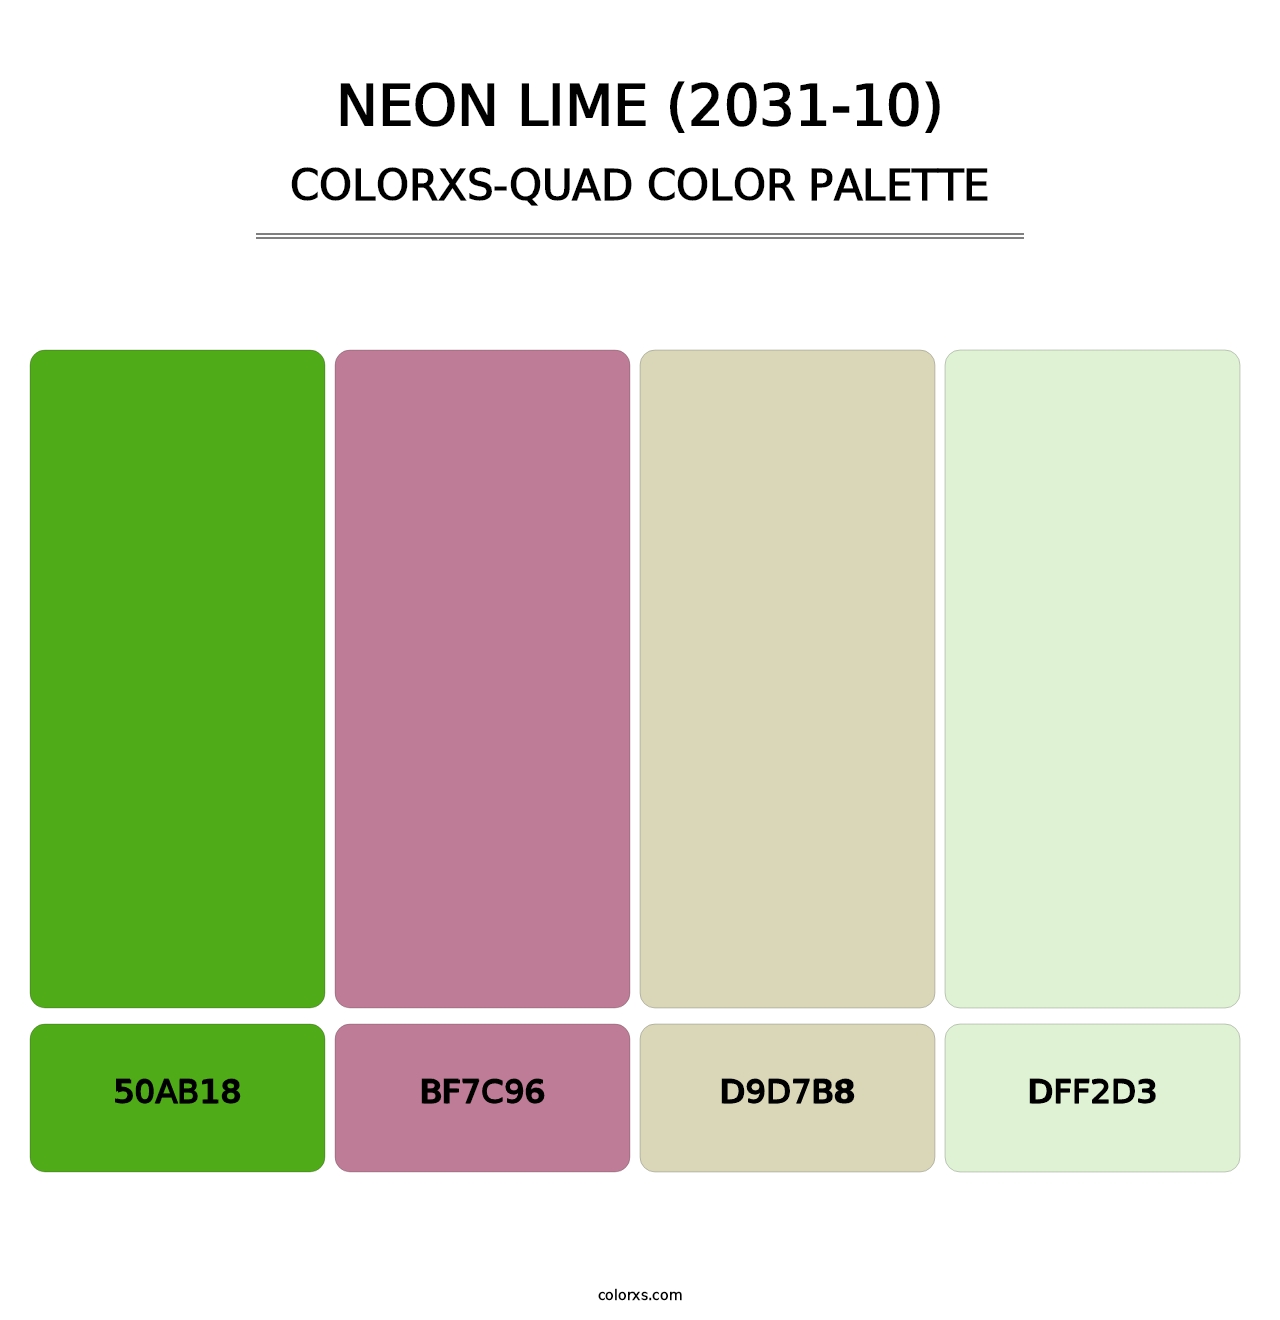 Neon Lime (2031-10) - Colorxs Quad Palette